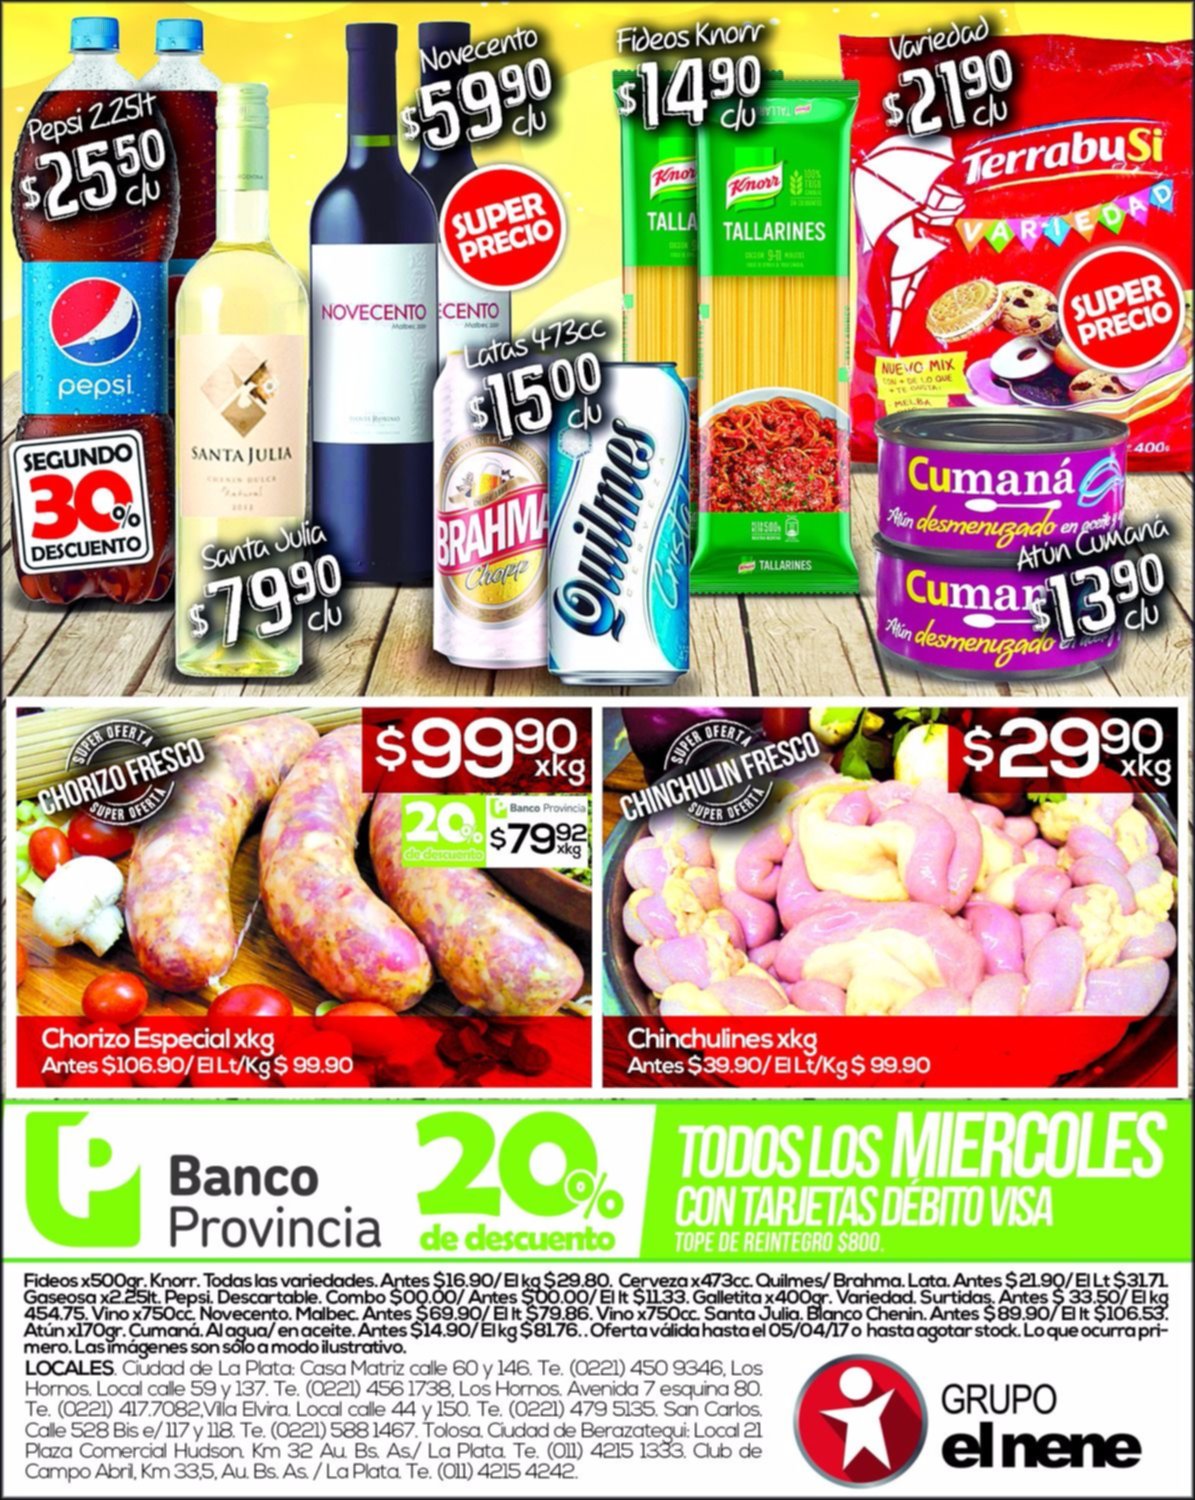 Grupo El Nene: esta semana los mejores precios en bebidas y carnicería